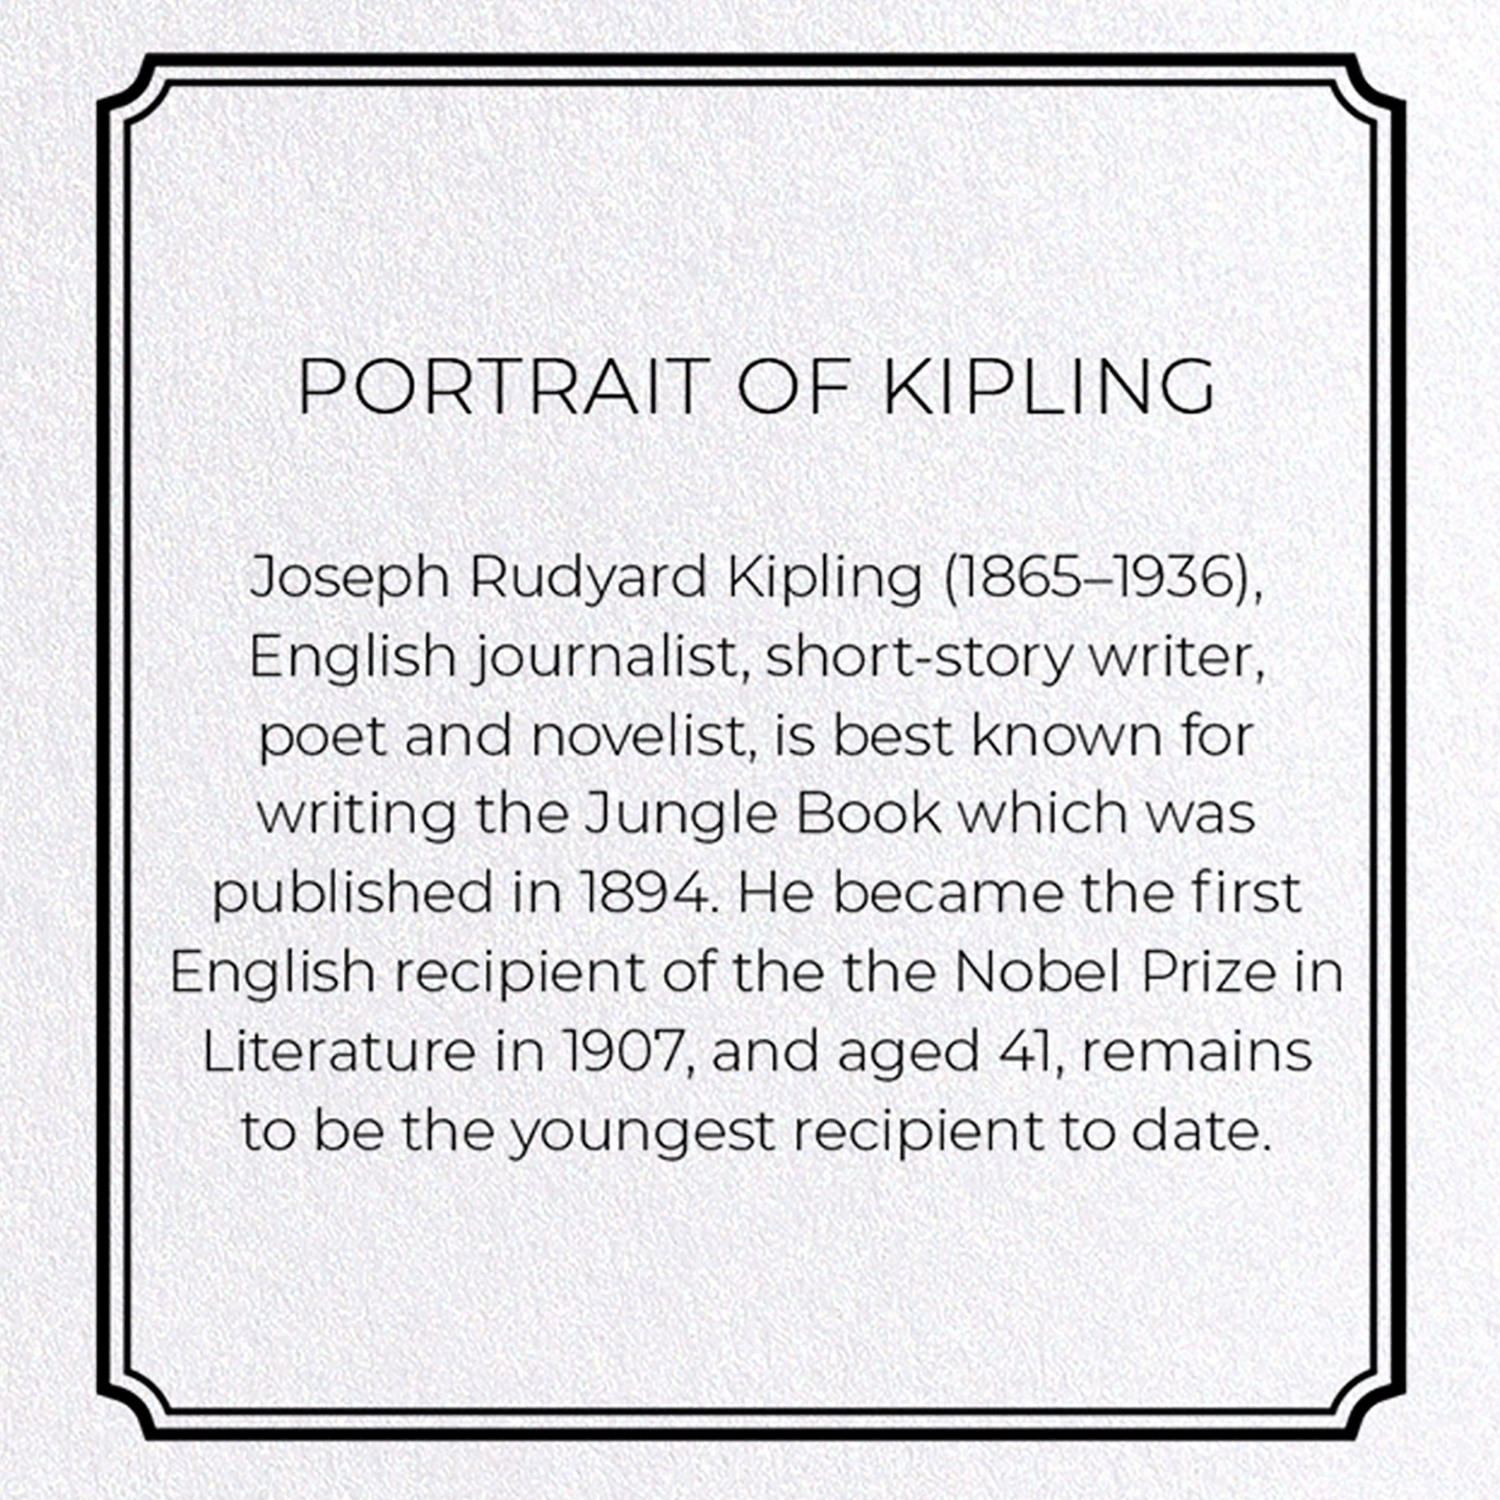 PORTRAIT OF KIPLING